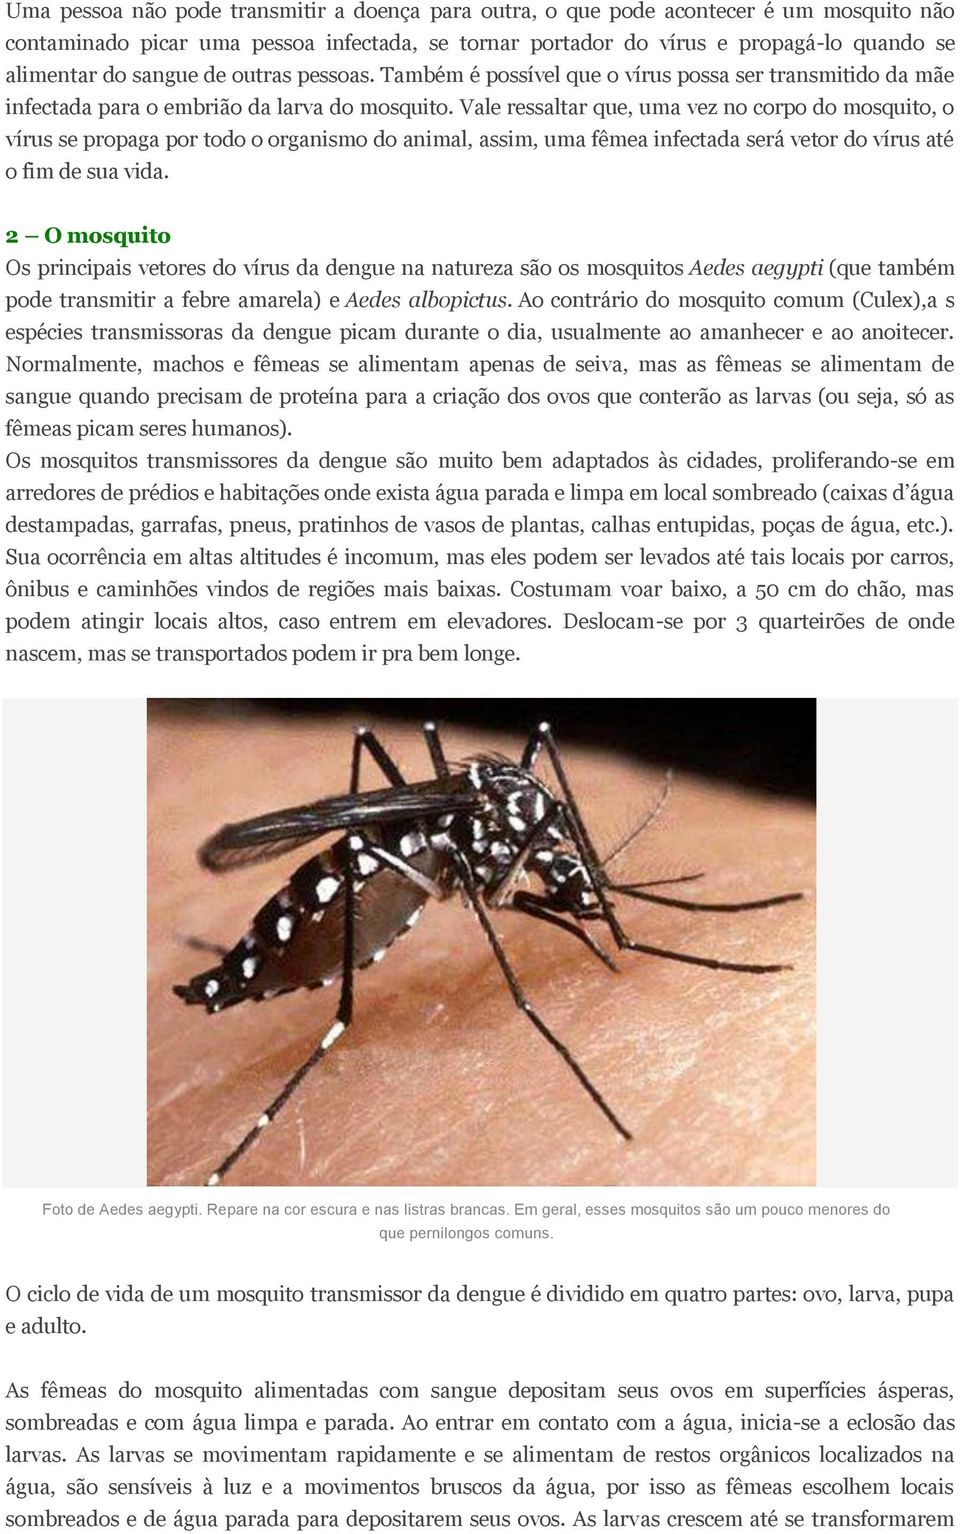 Vale ressaltar que, uma vez no corpo do mosquito, o vírus se propaga por todo o organismo do animal, assim, uma fêmea infectada será vetor do vírus até o fim de sua vida.